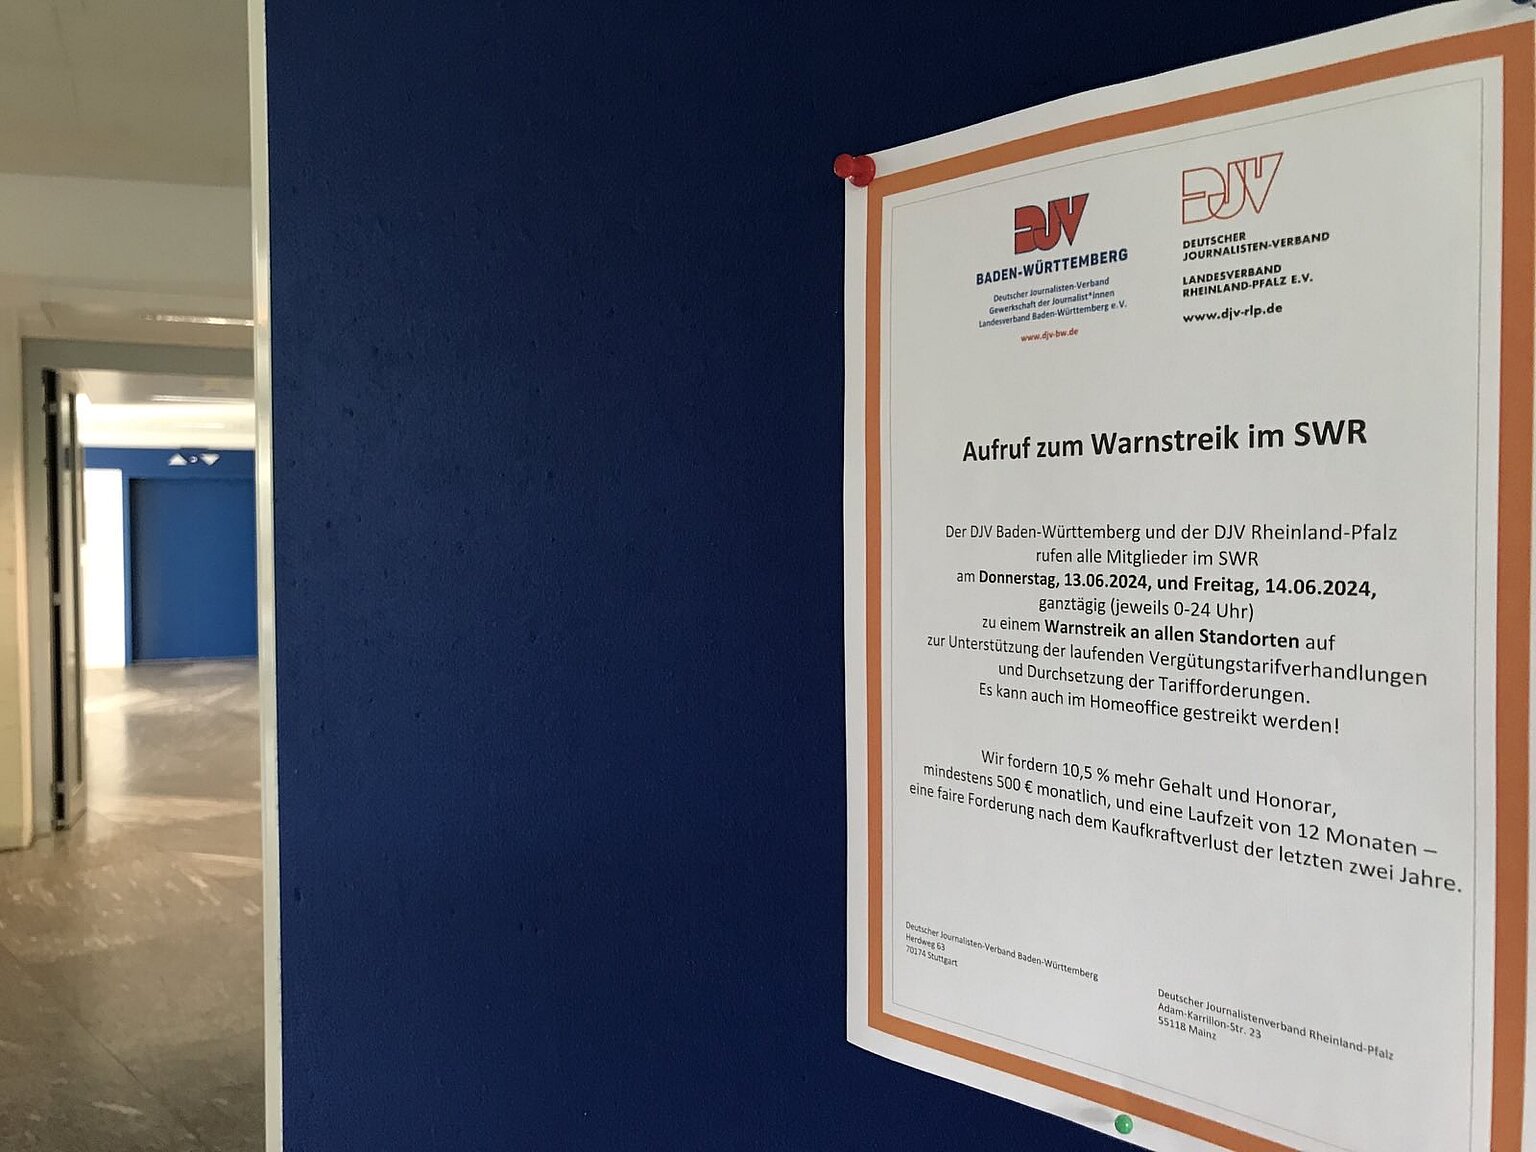  – Leere Flure im Stuttgarter Funkhaus: Die Beschäftigten im SWR sind zwei Tage lang im Streik.